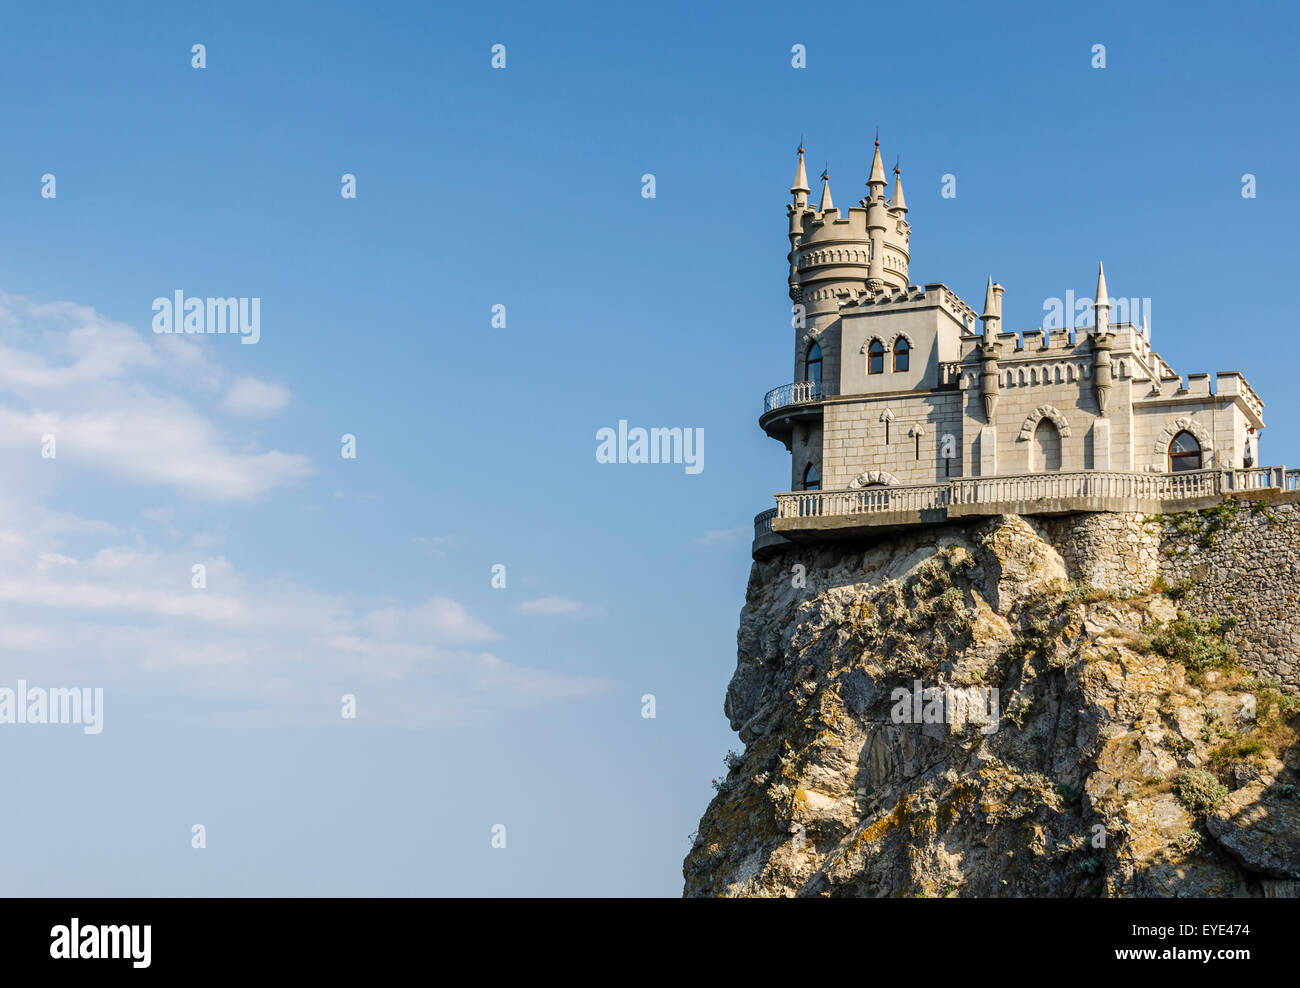 Das bekannte Schloss Schwalbennest in der Nähe von Yalta. Krim, Russland Stockfoto